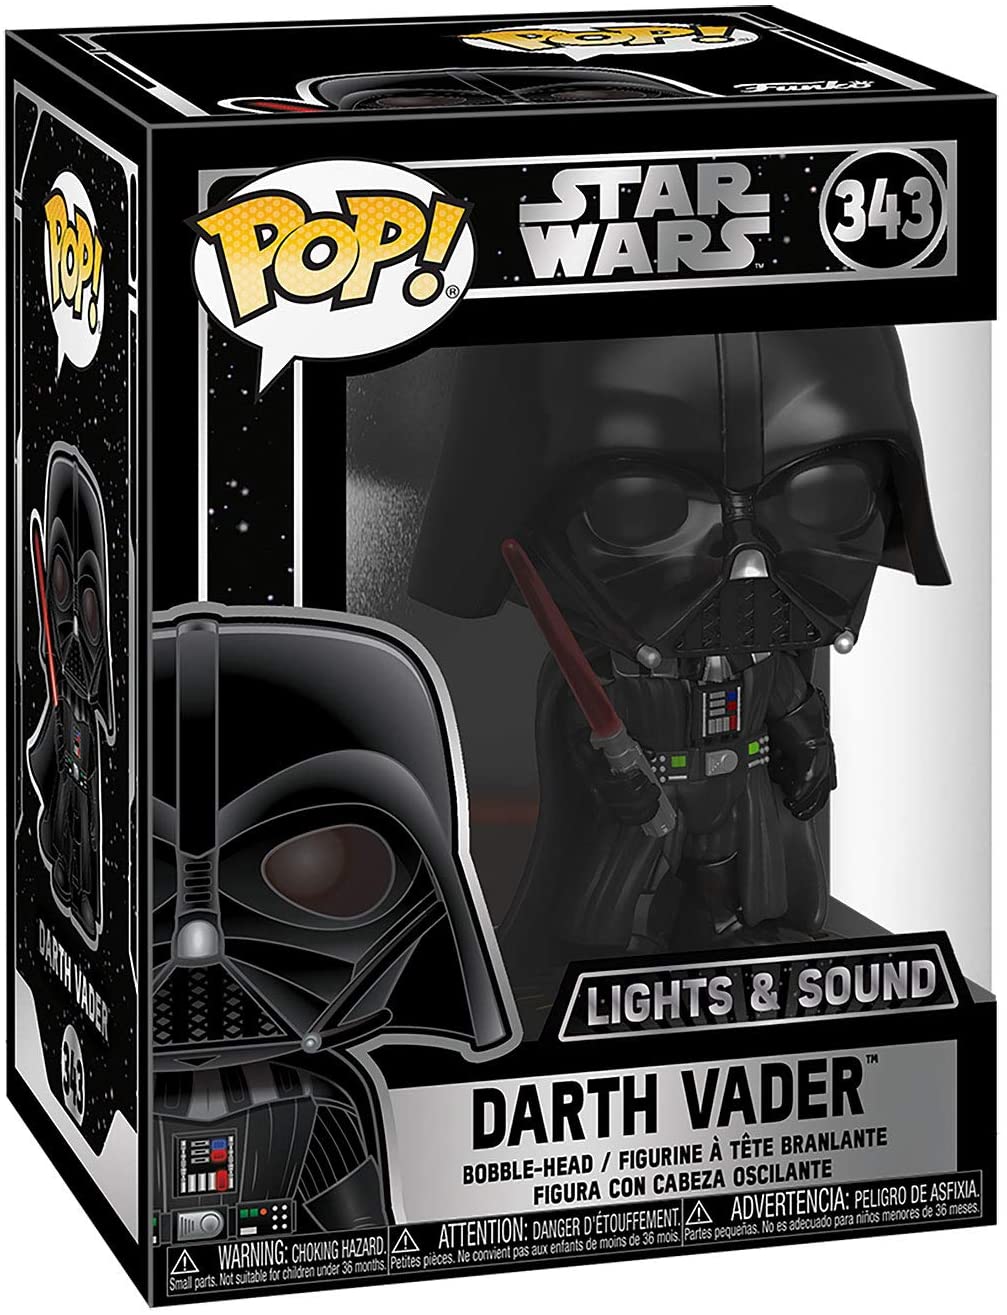 Star Wars Darth Vader Lights & Sounds Funko 35519 Pop! Vinyl #343